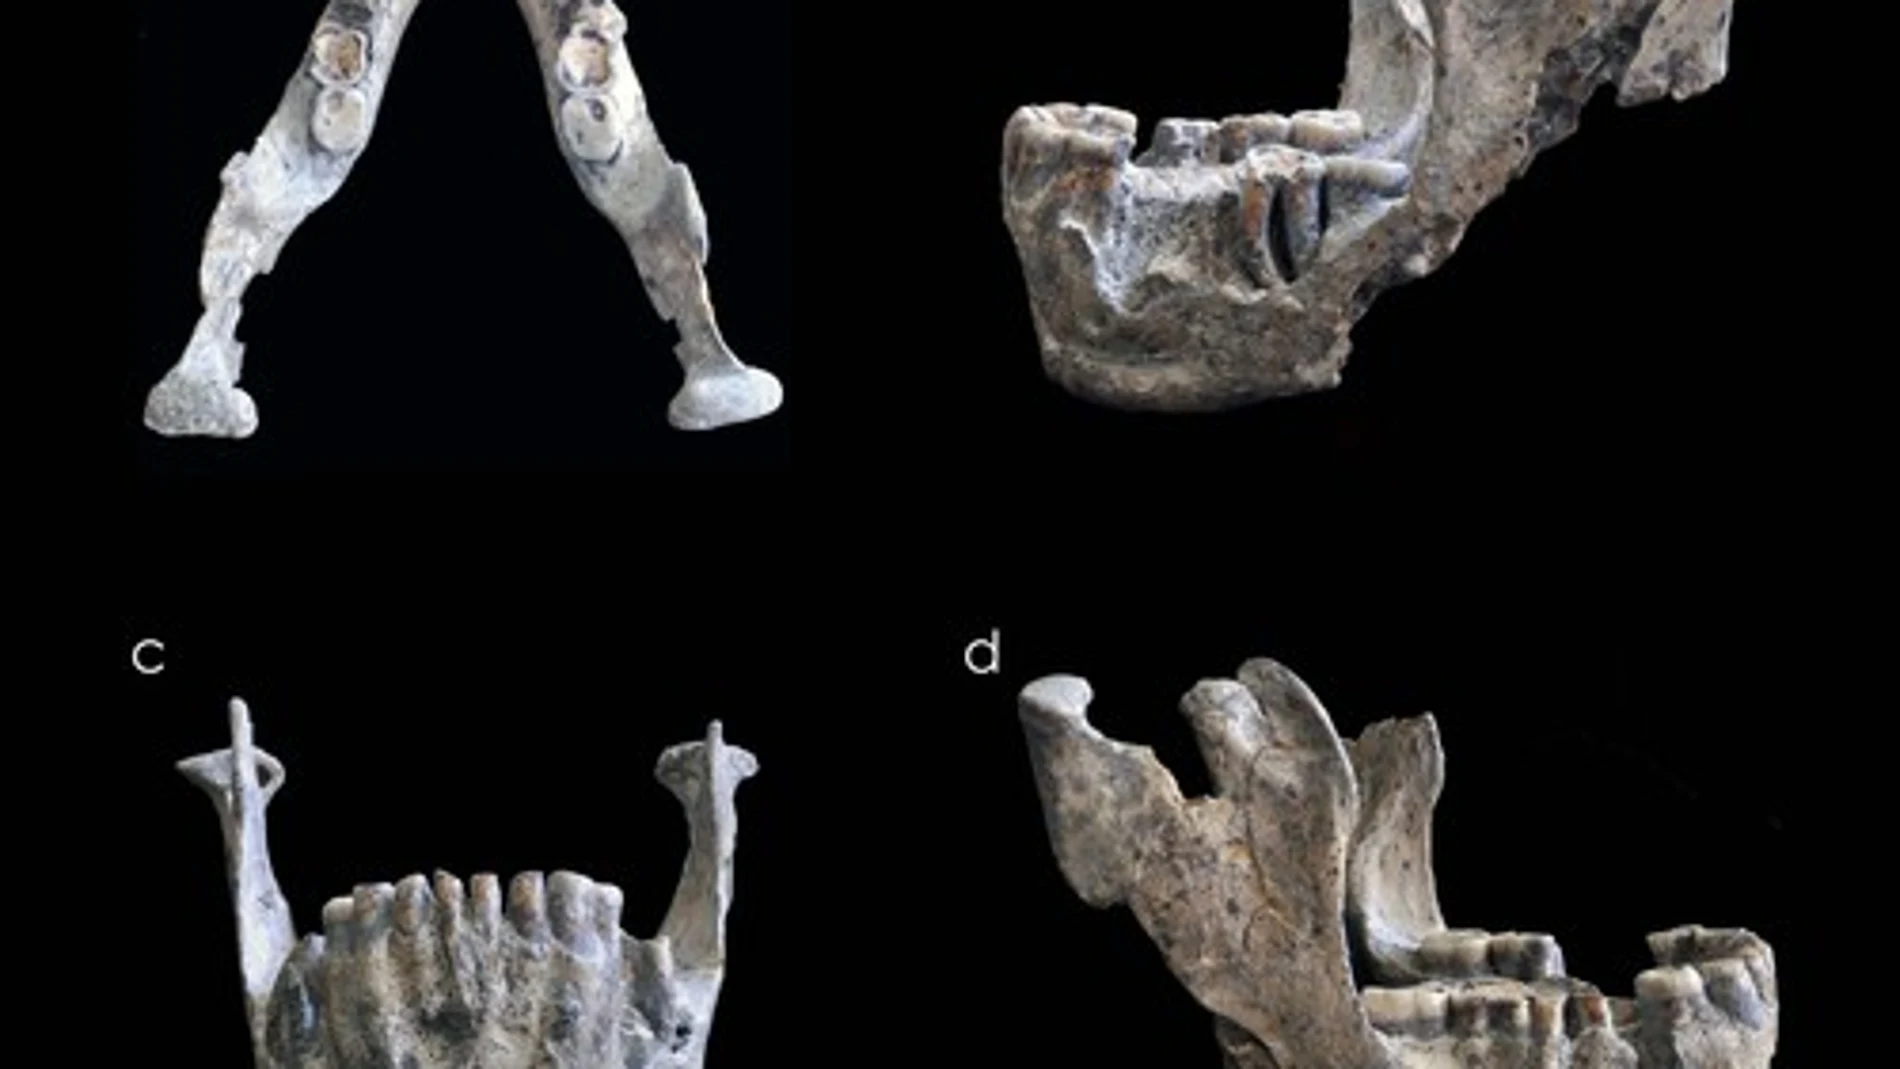 Resto mandibular del cráneo 5 hallado en el yacimiento georgiano de Dmanisi